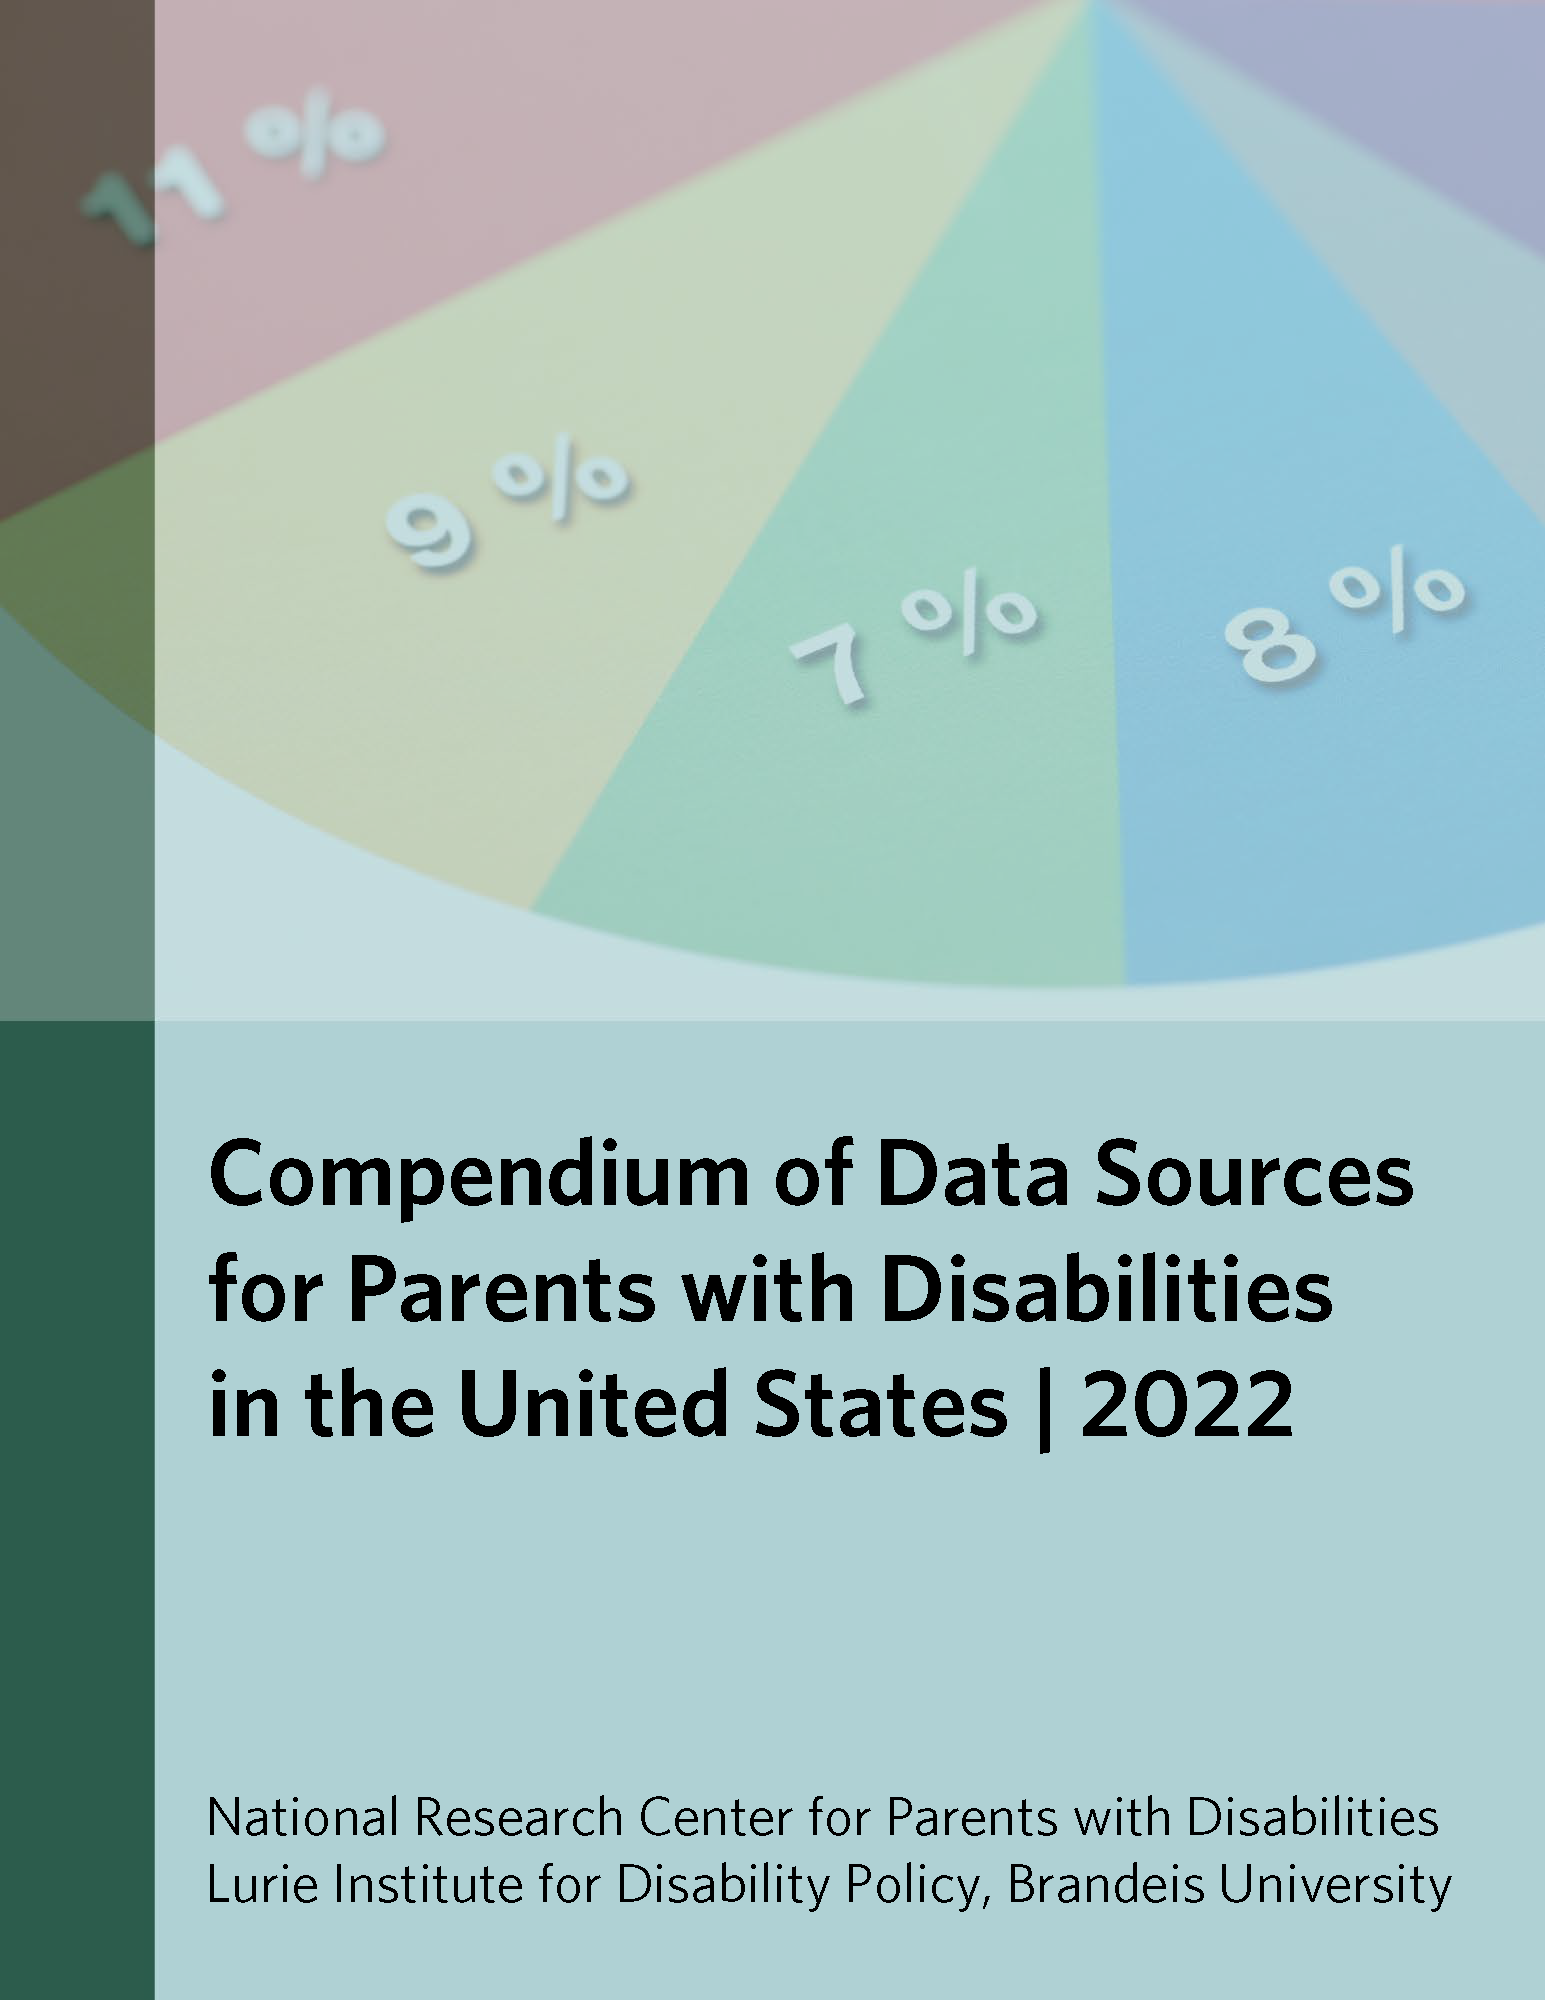 Data Compendium 2022: cover